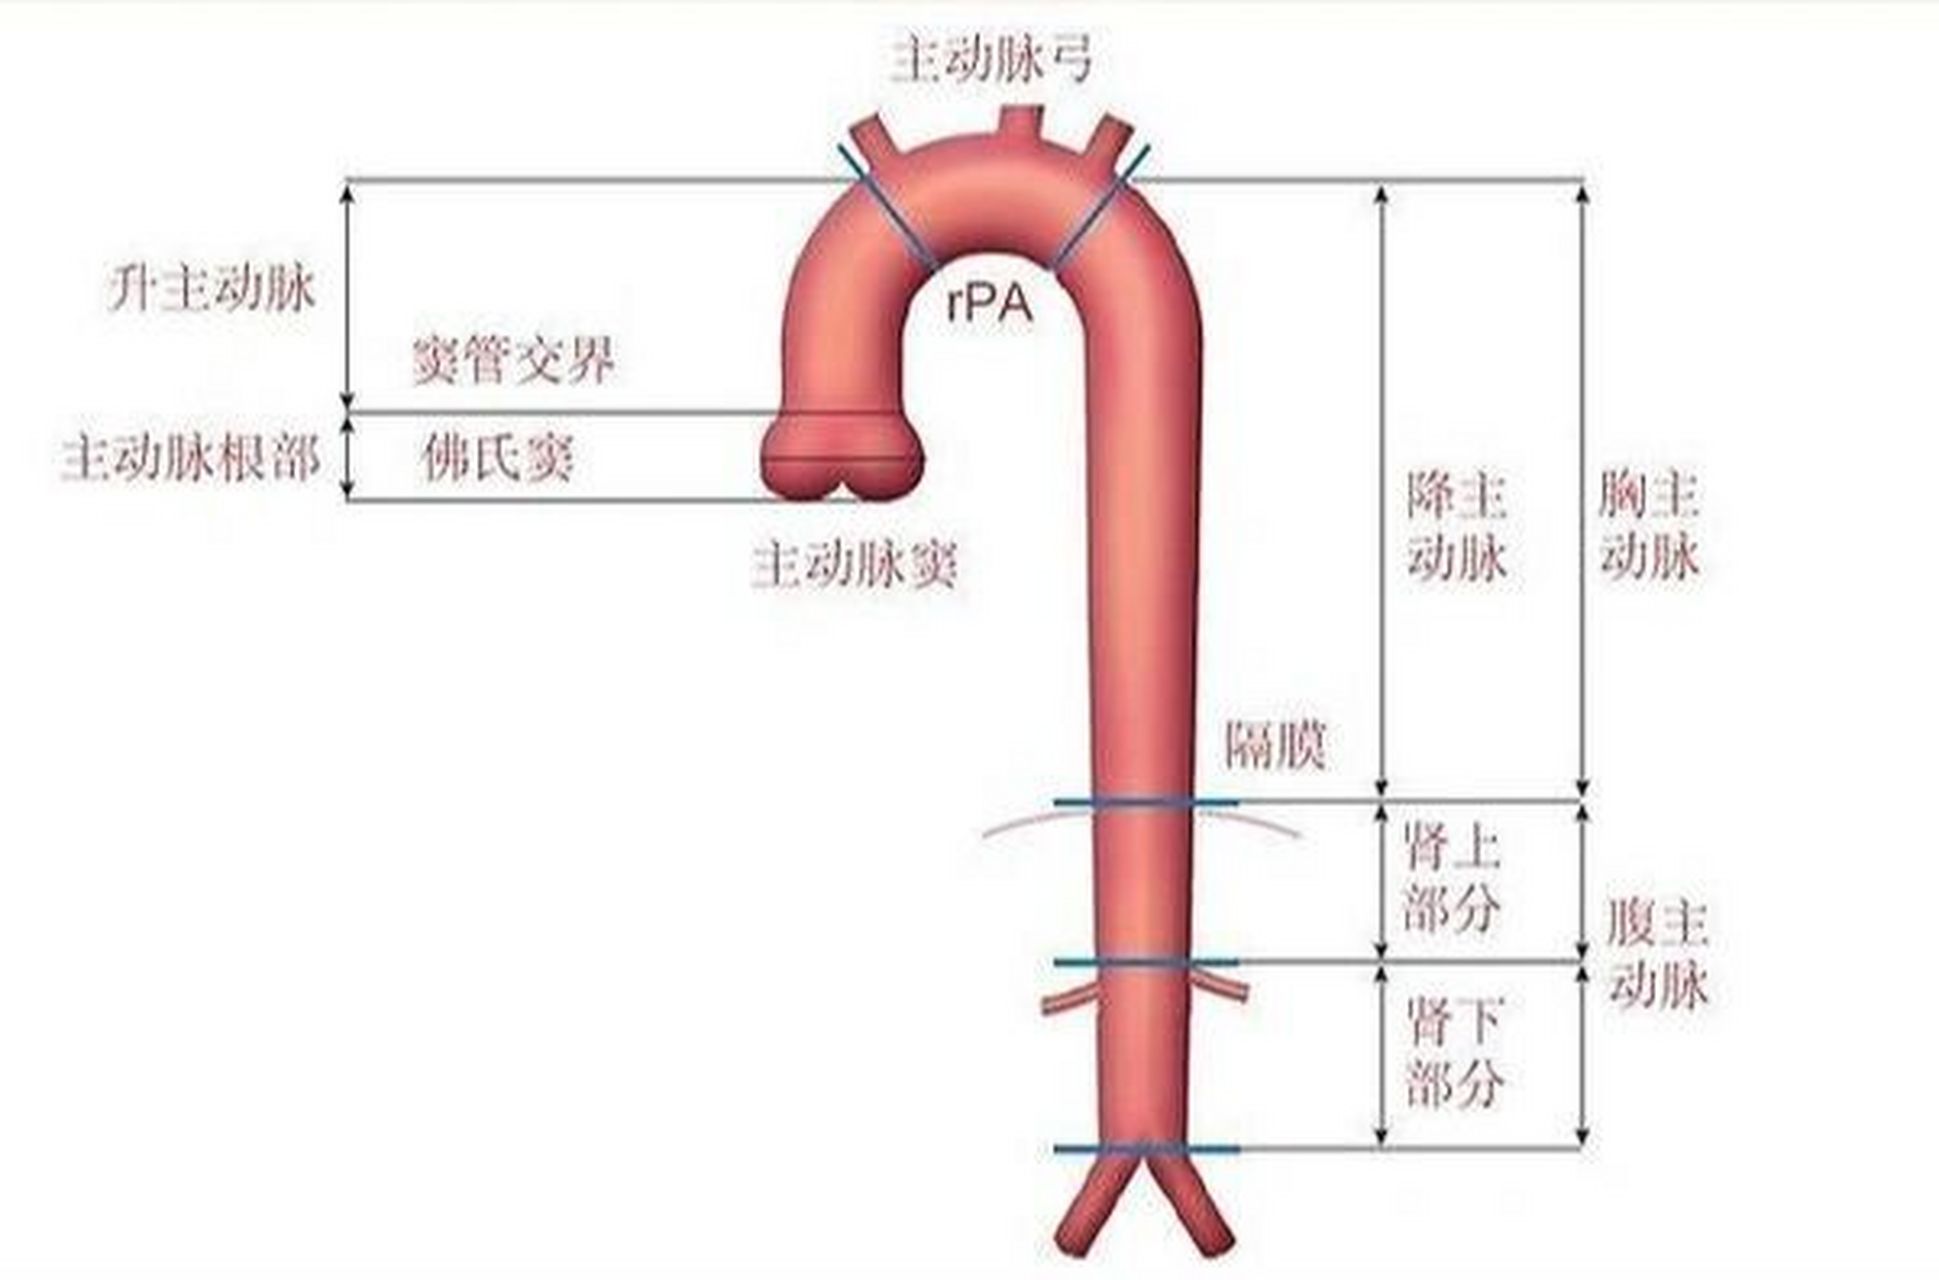 血管分层结构图图片